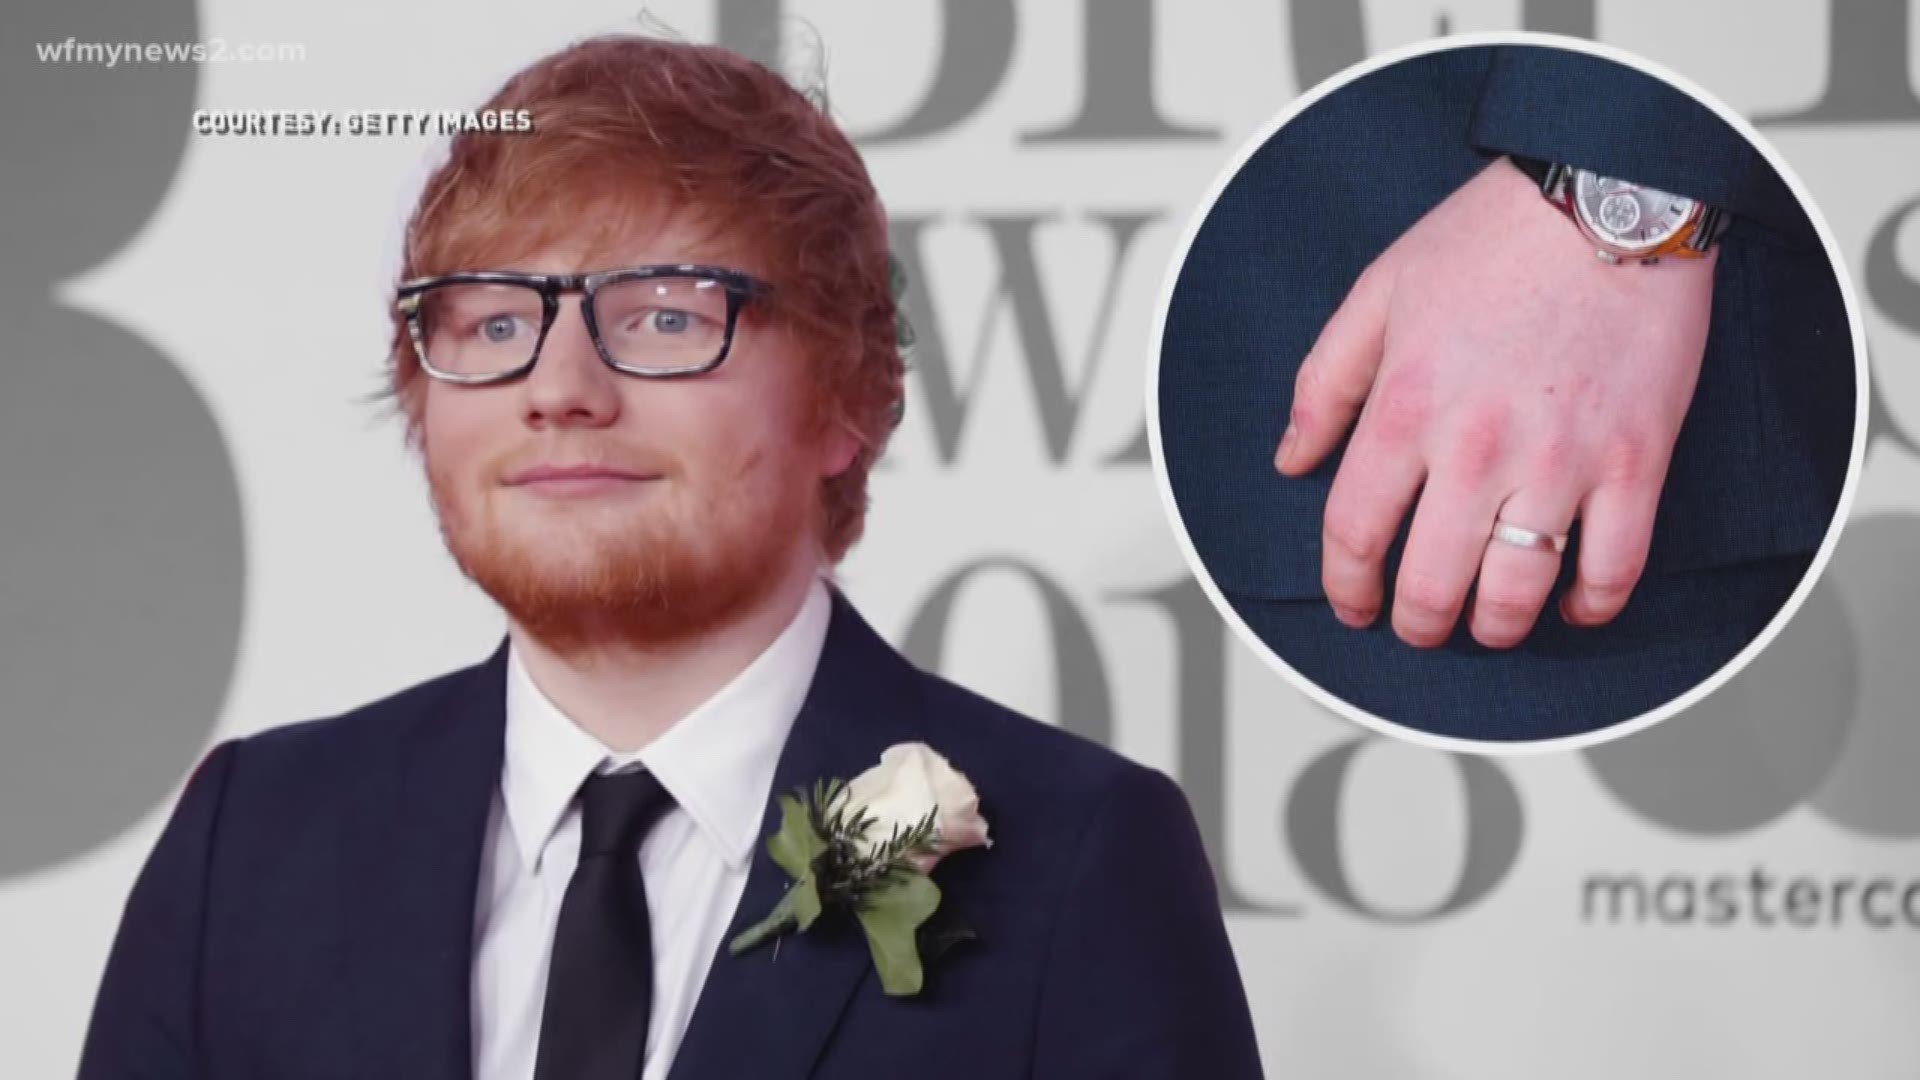 Ed Sheeran Wearing 'Man-gagement" Ring